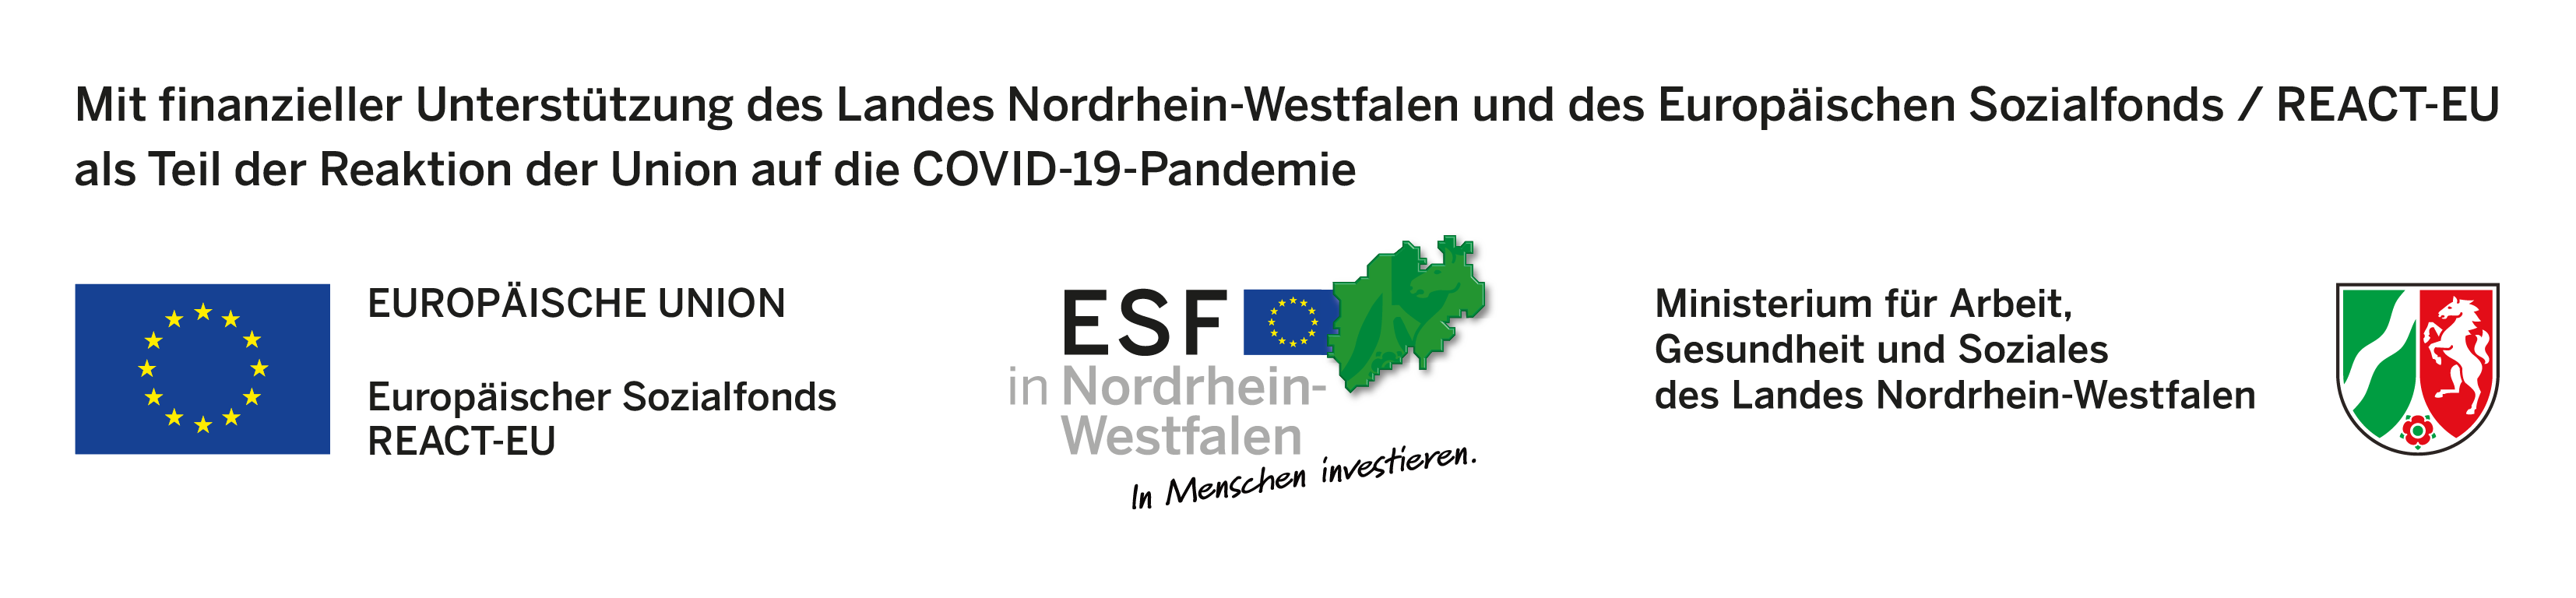 Mit finanzieller Unterstützung des Landes Nordrhein-Westfalen und des Europäischen Sozialfonds / REACT-EU als Teil der Reaktion der Union auf die COVID-19-Pandemie